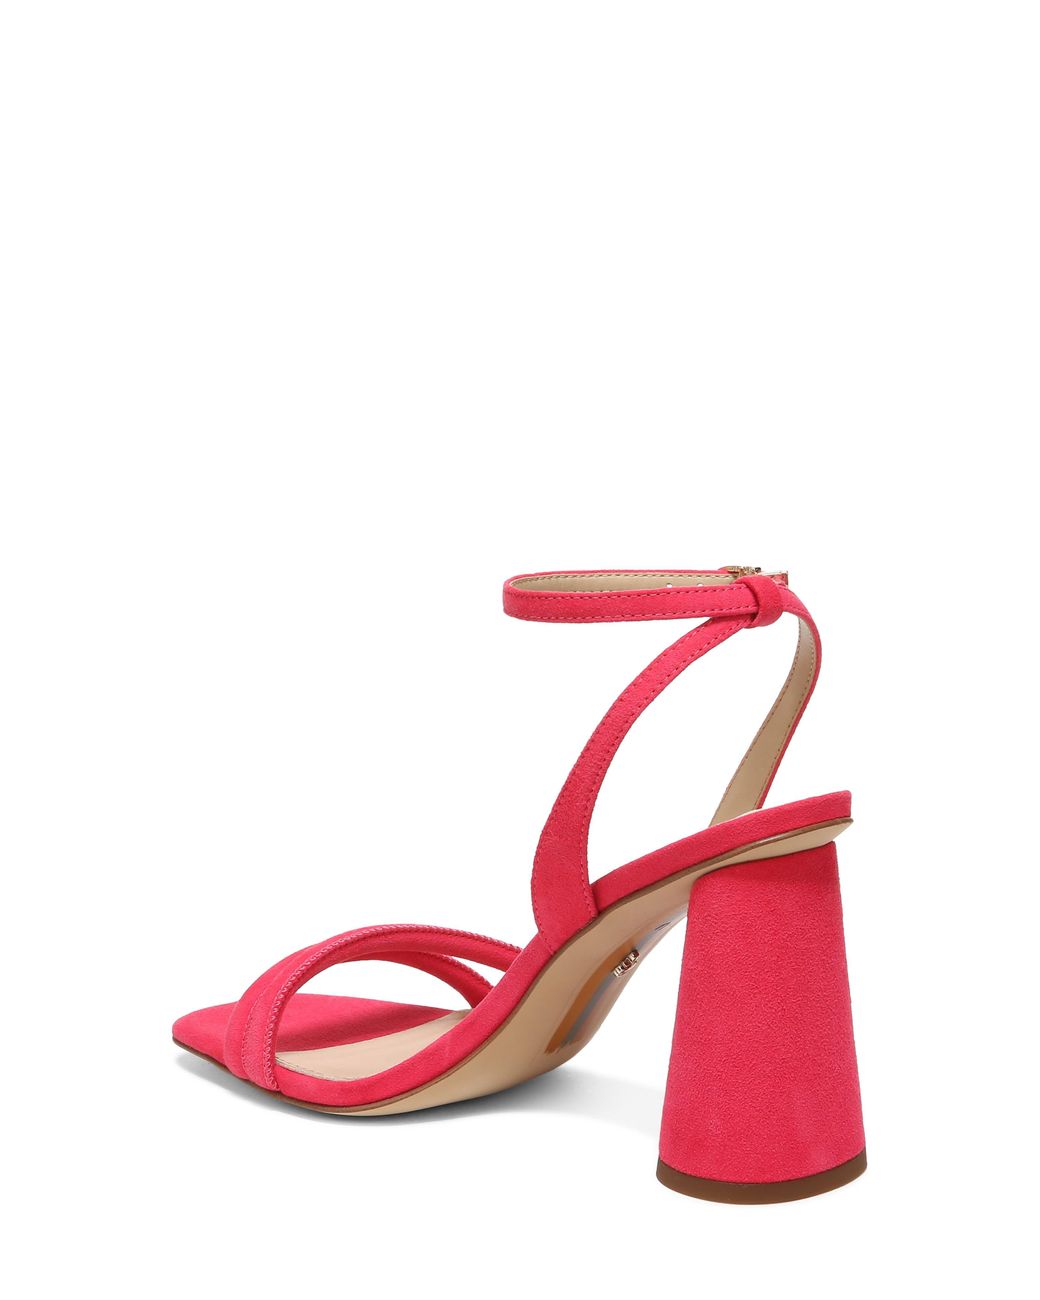 Sam Edelman Kia Ankle Strap Sandal in Red | Lyst